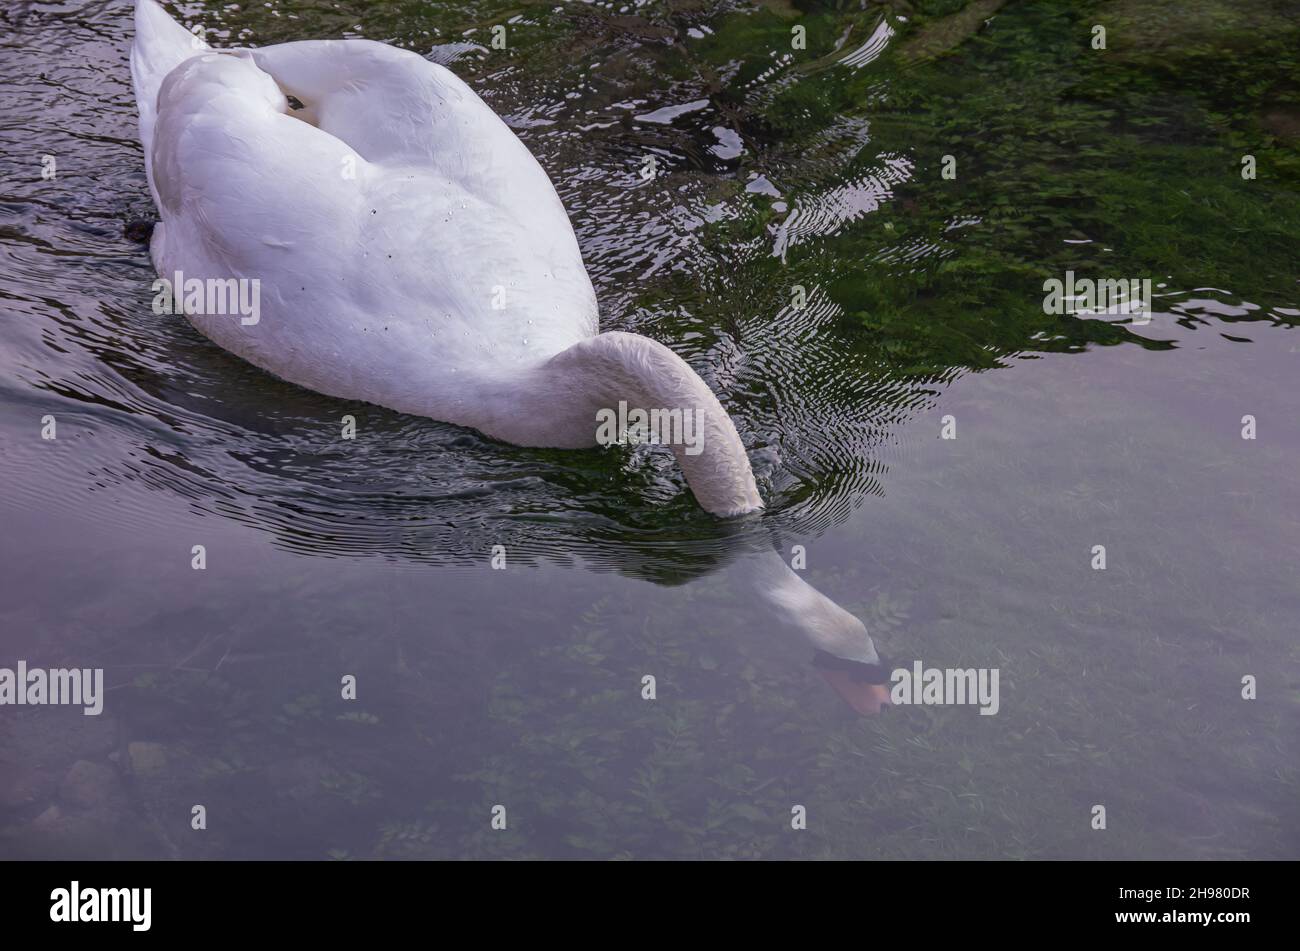 Vogelbeobachtungen am Wasser am Beispiel eines Mute Swans auf dem Zwiefalter Aach in Zwiefalten, Baden-Württemberg, Deutschland. Stockfoto